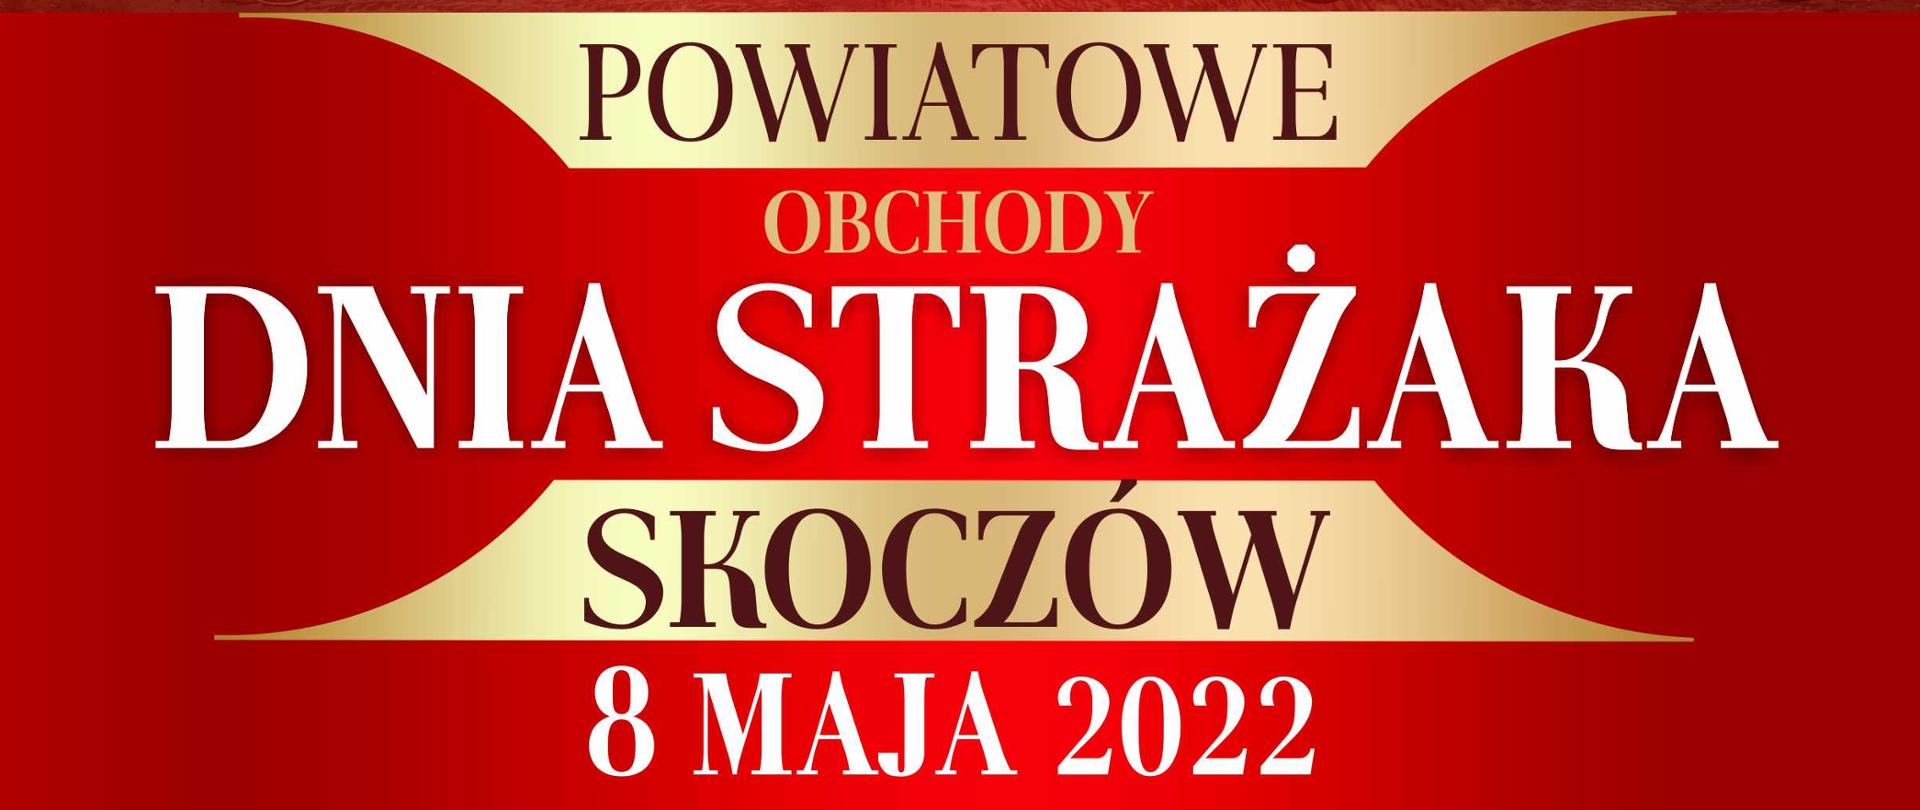 Powiatowe Obchody Dnia Strażaka - Skoczów 8 maja 2022 roku